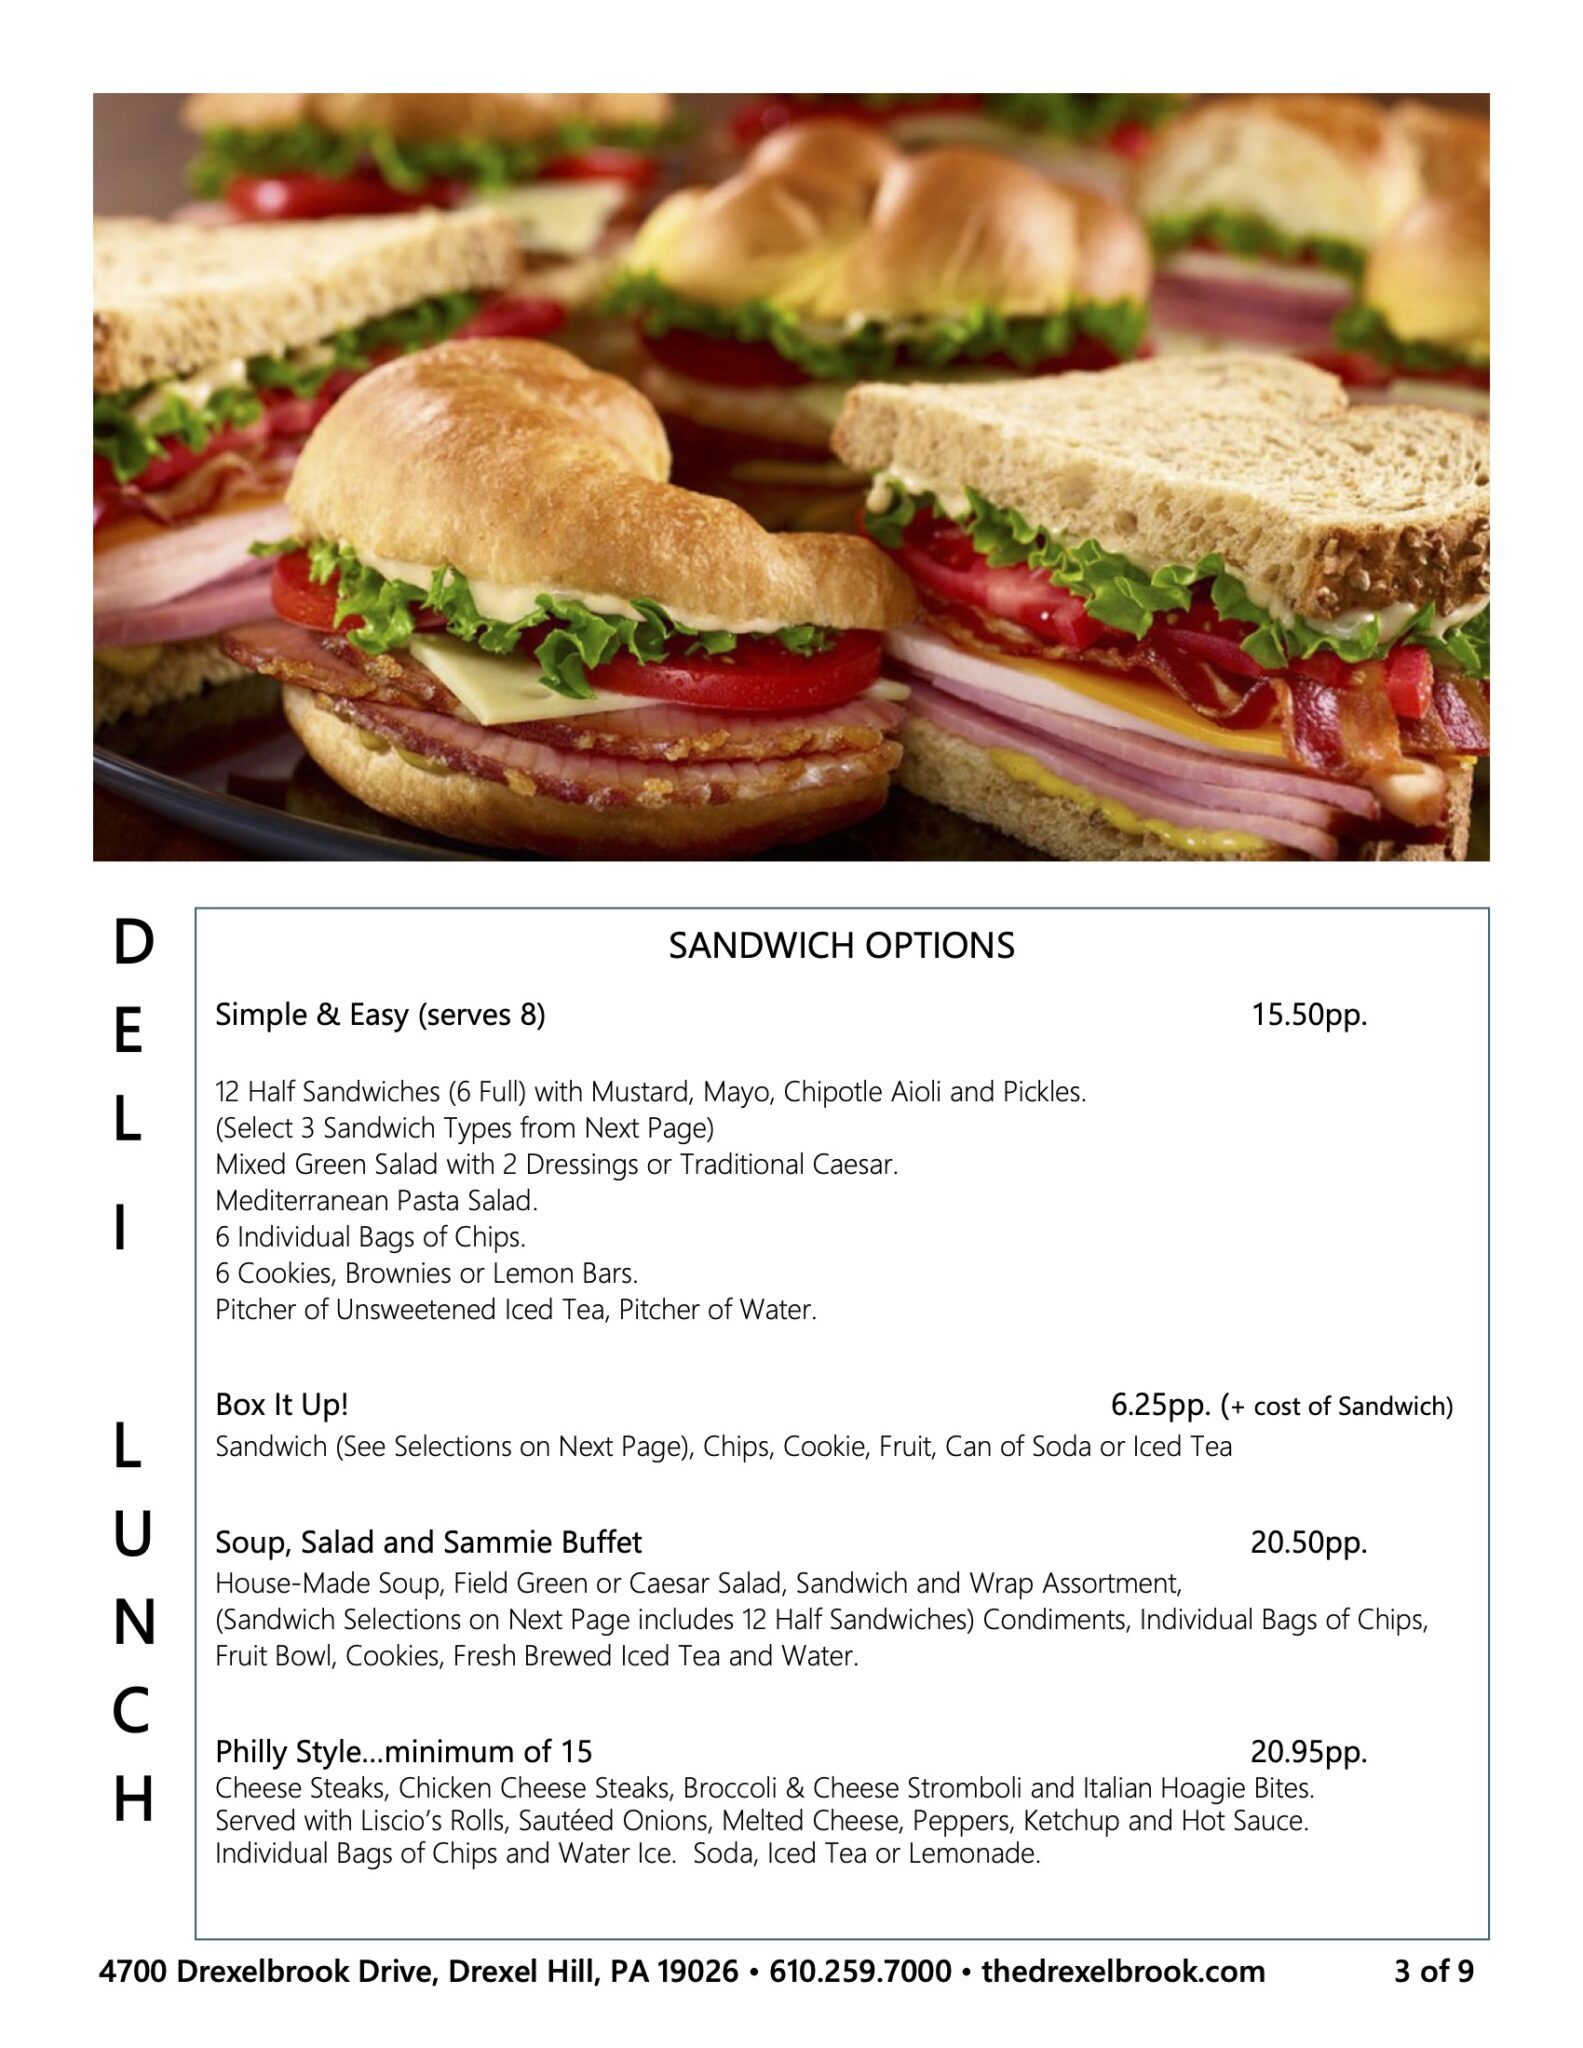 Drexelbrook sandwich menu options